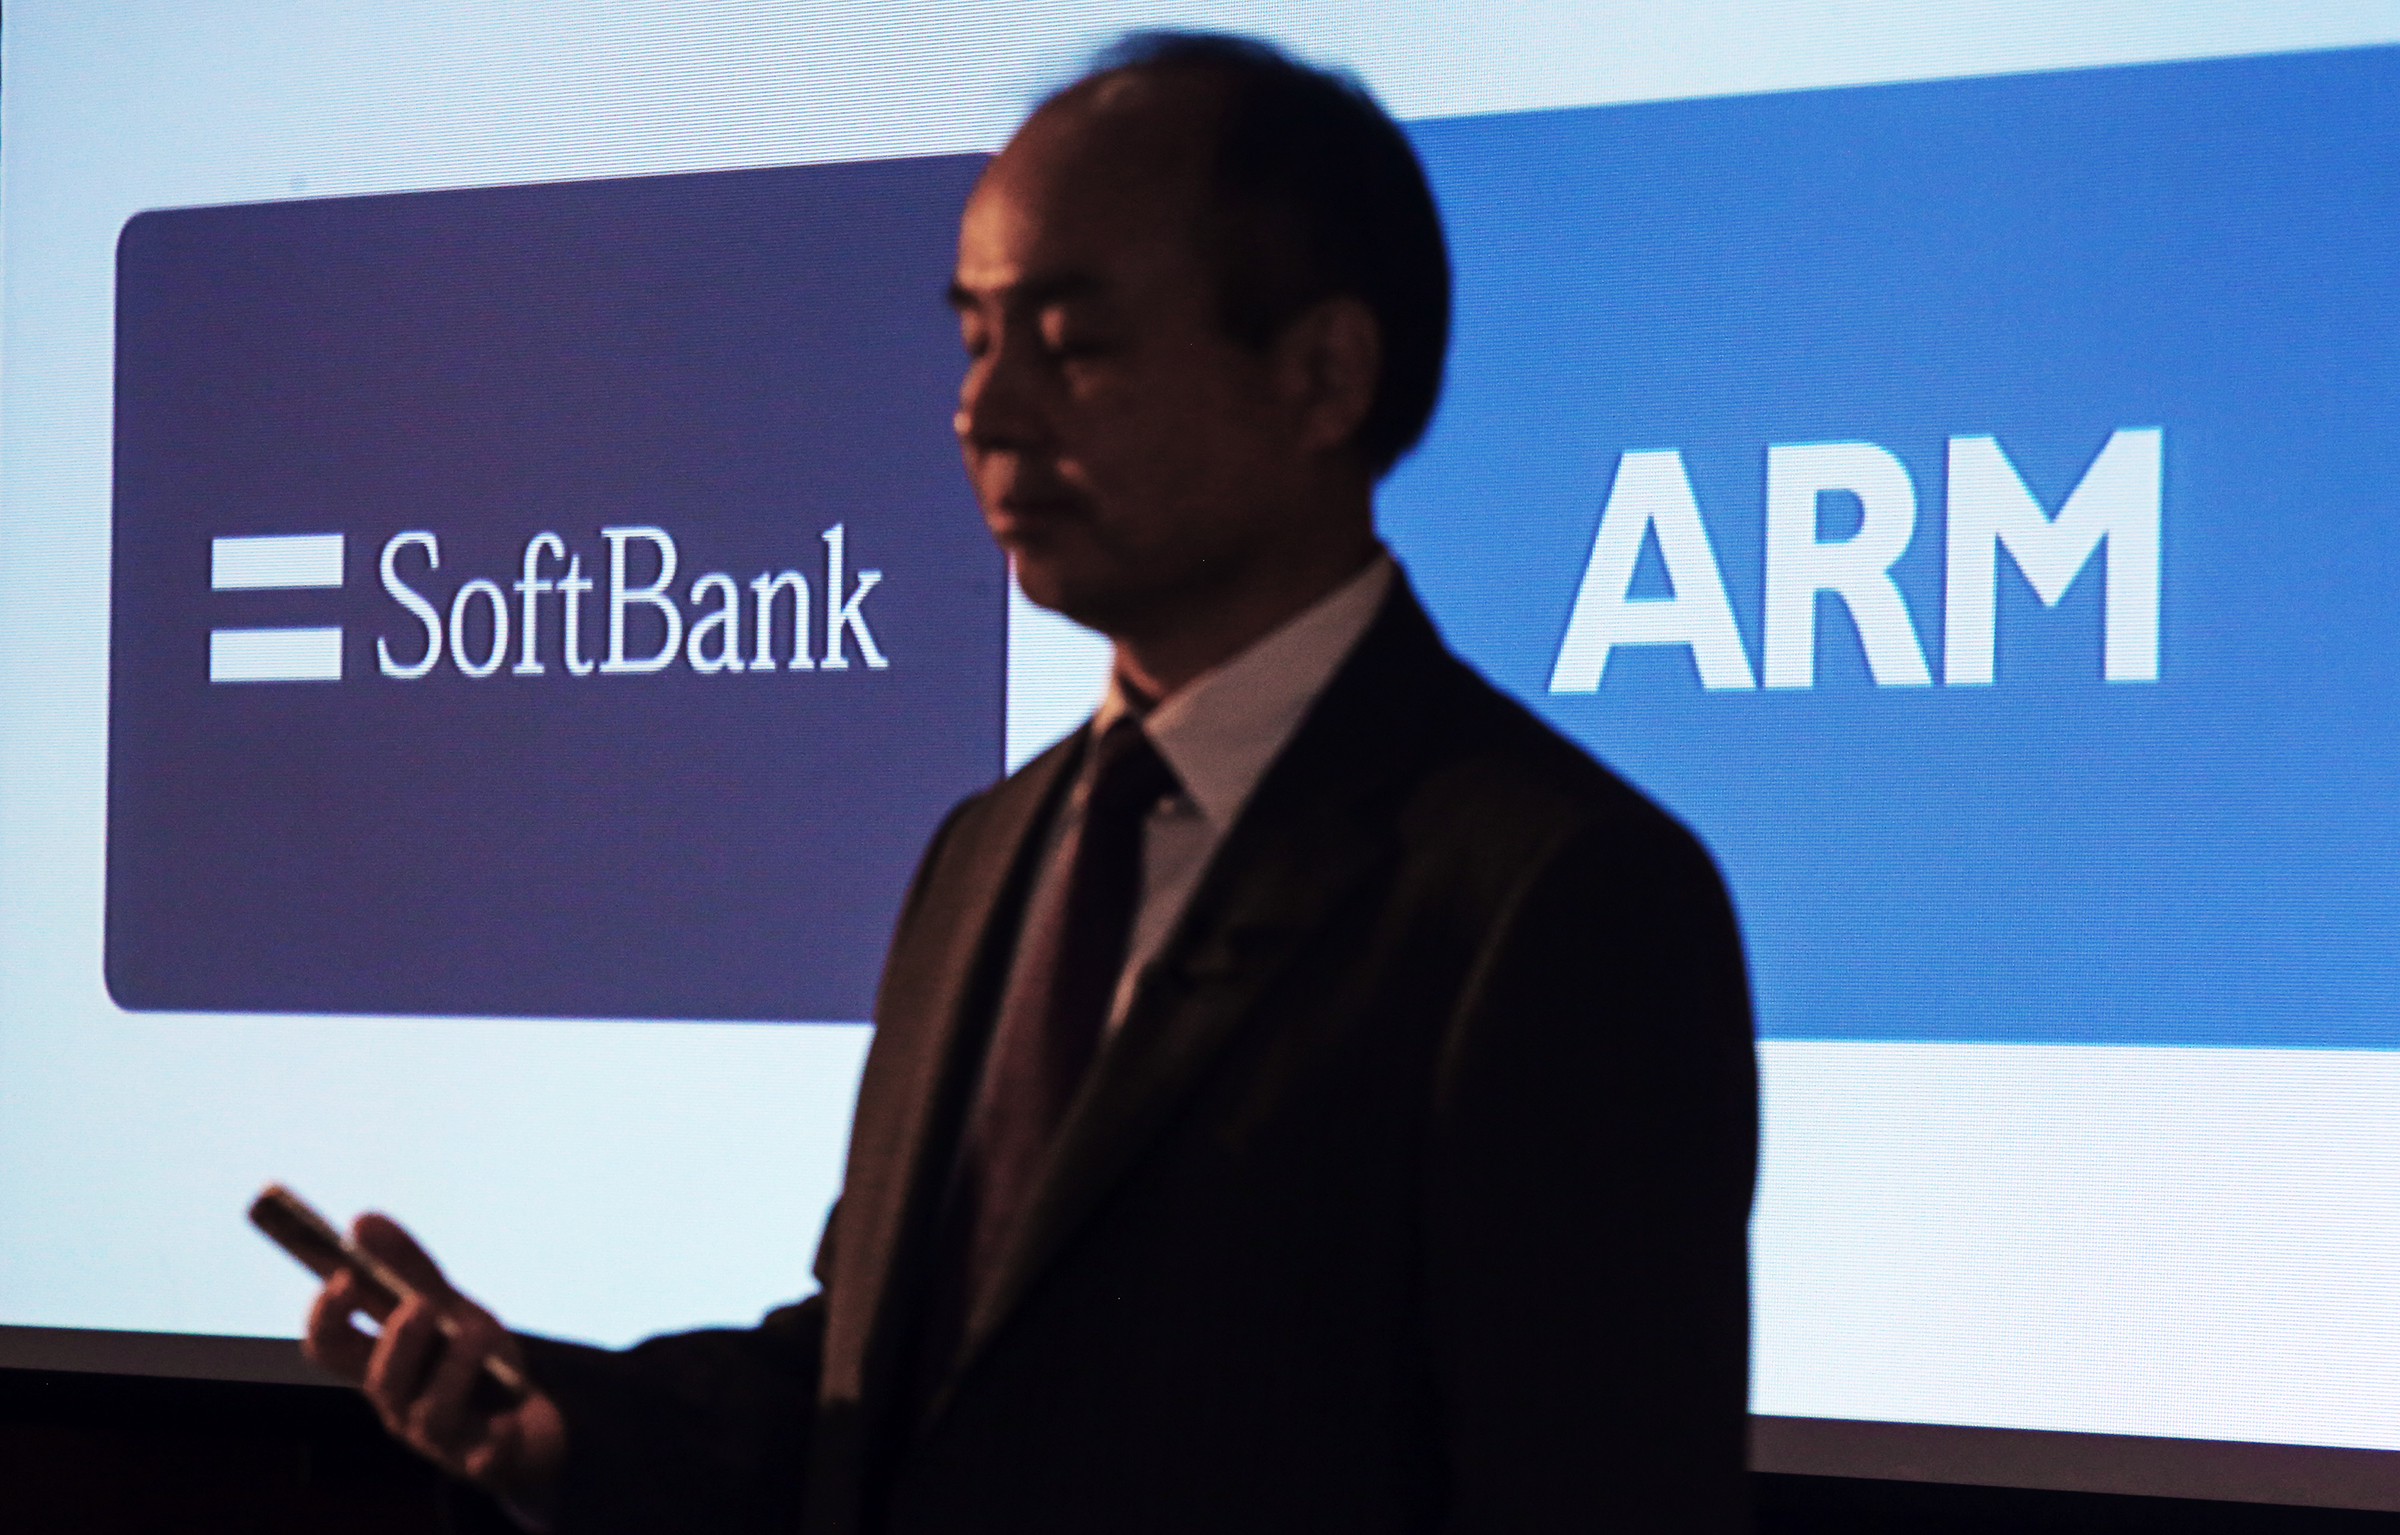 ARM ile Softbank arasındaki dev anlaşma Türkiye’de gerçekleşmiş